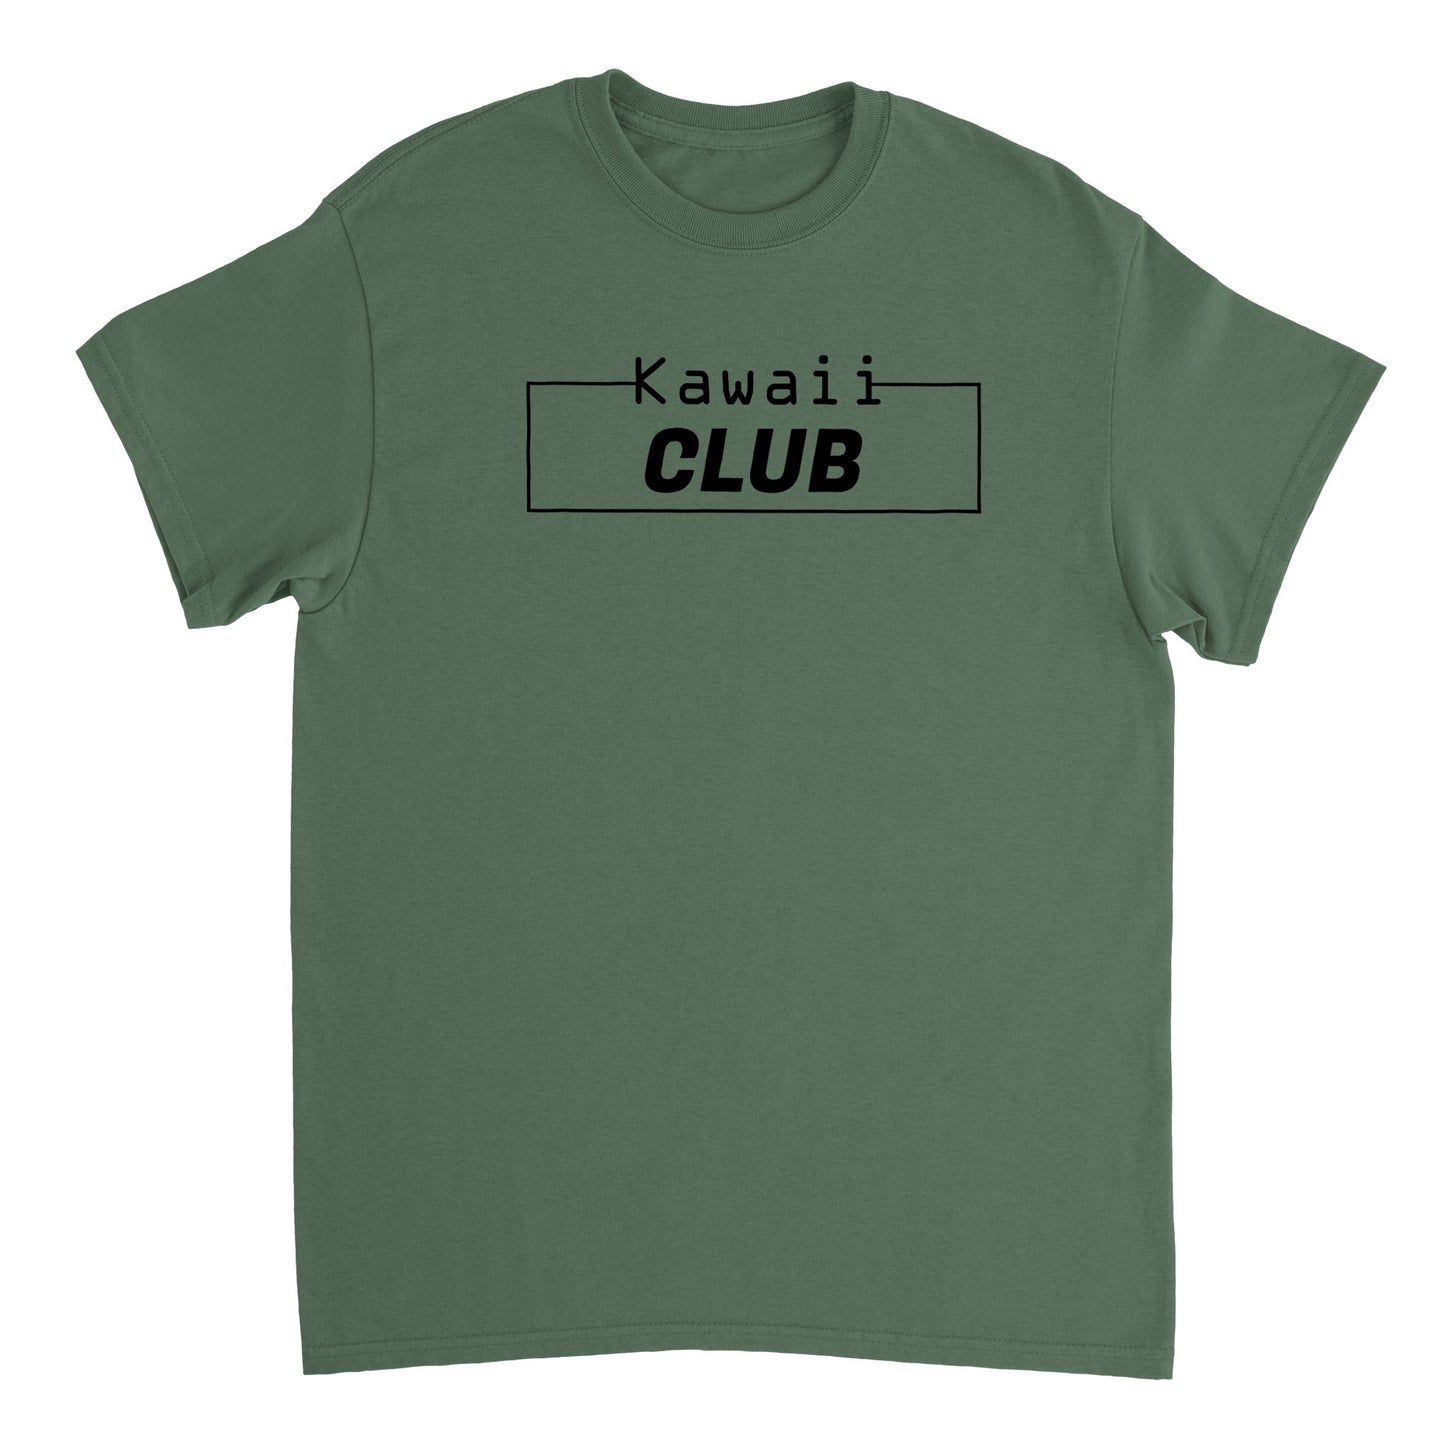 Kawaii Club Otaku World T Shirt